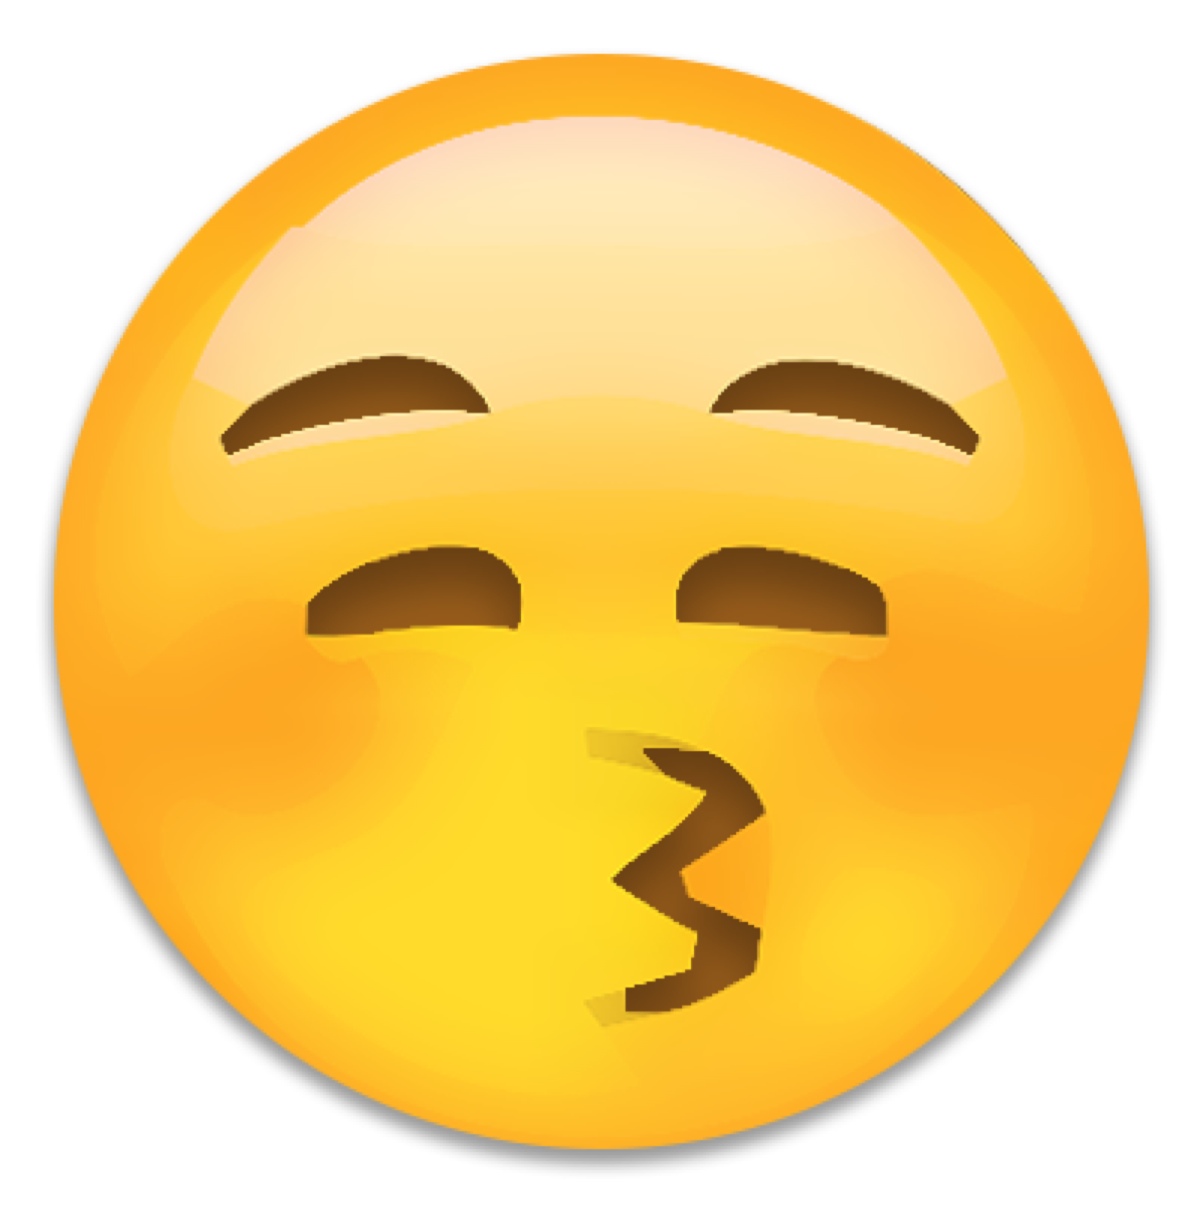 抖音内置emoji表情包图片